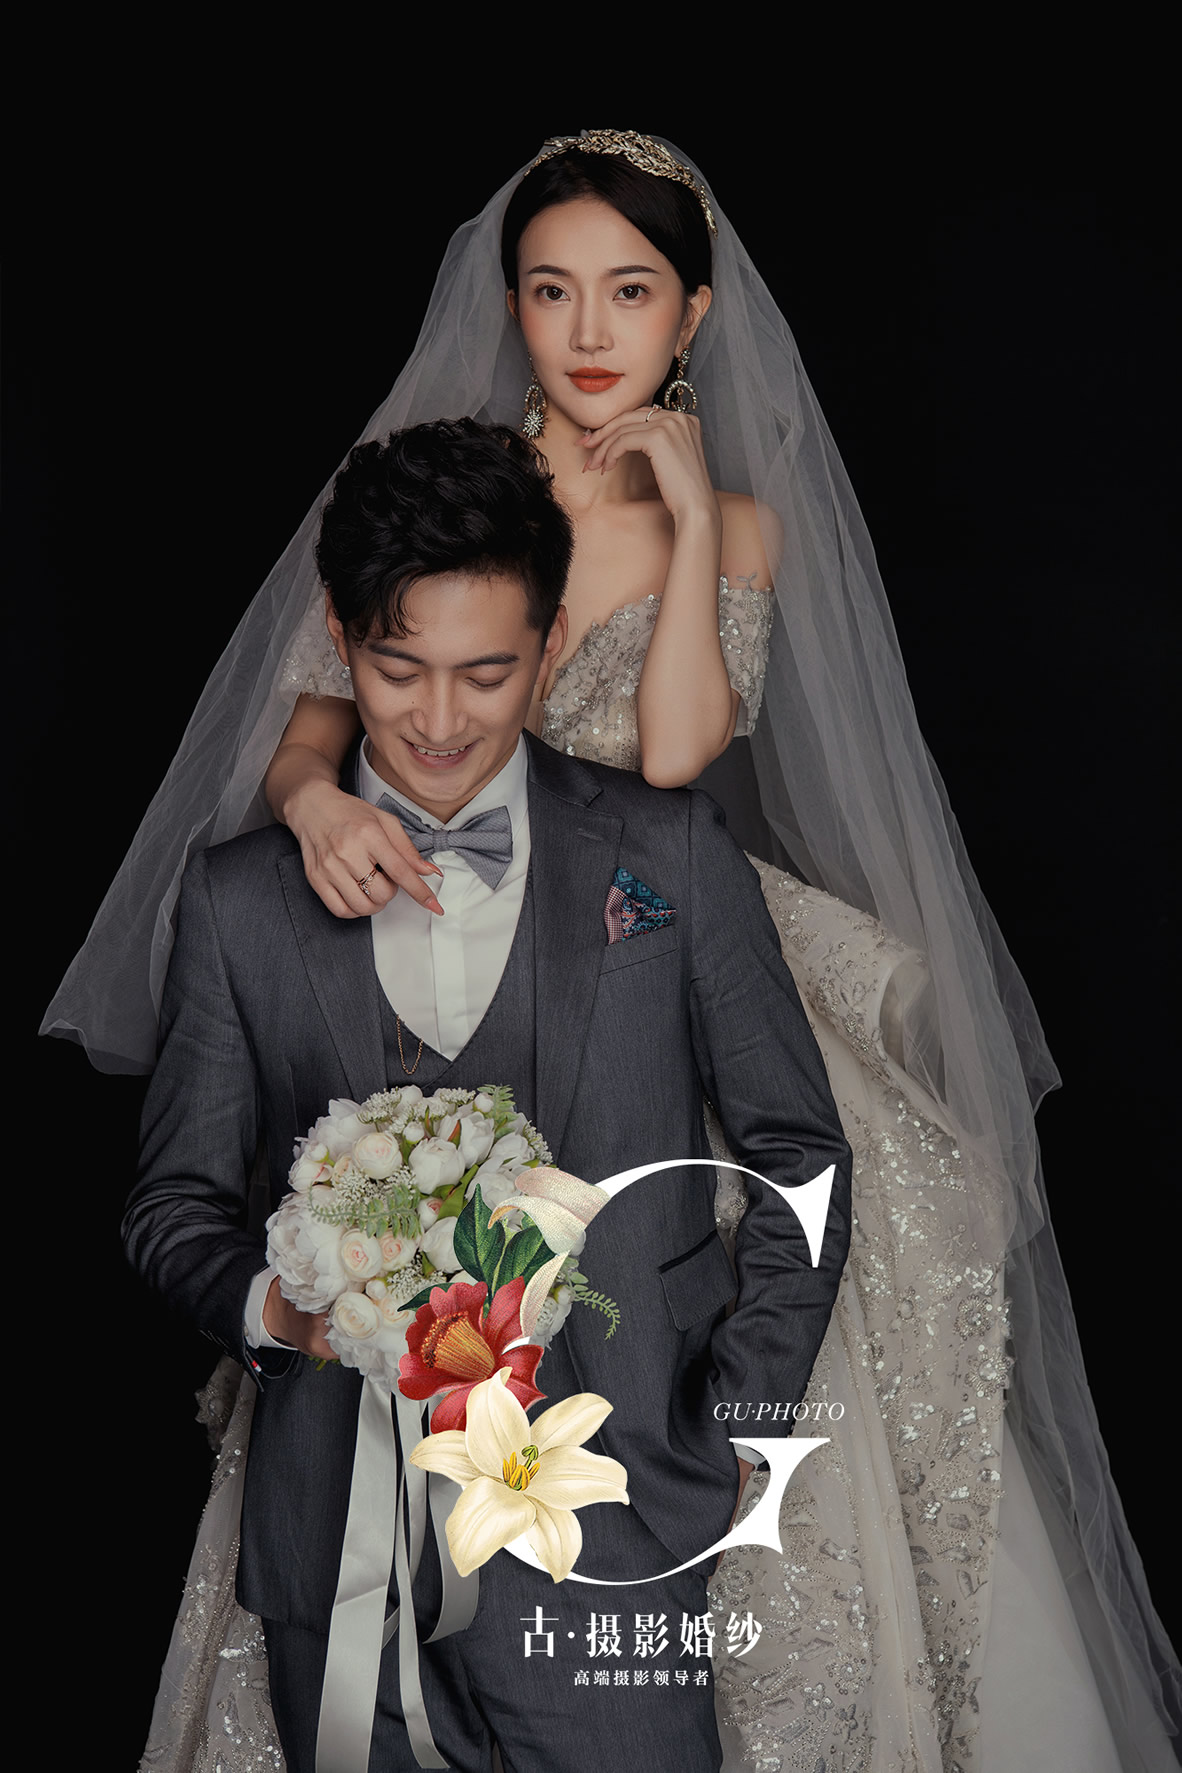 全新《ROMANCE》系列 - 明星范 - 古摄影婚纱艺术-古摄影成都婚纱摄影艺术摄影网